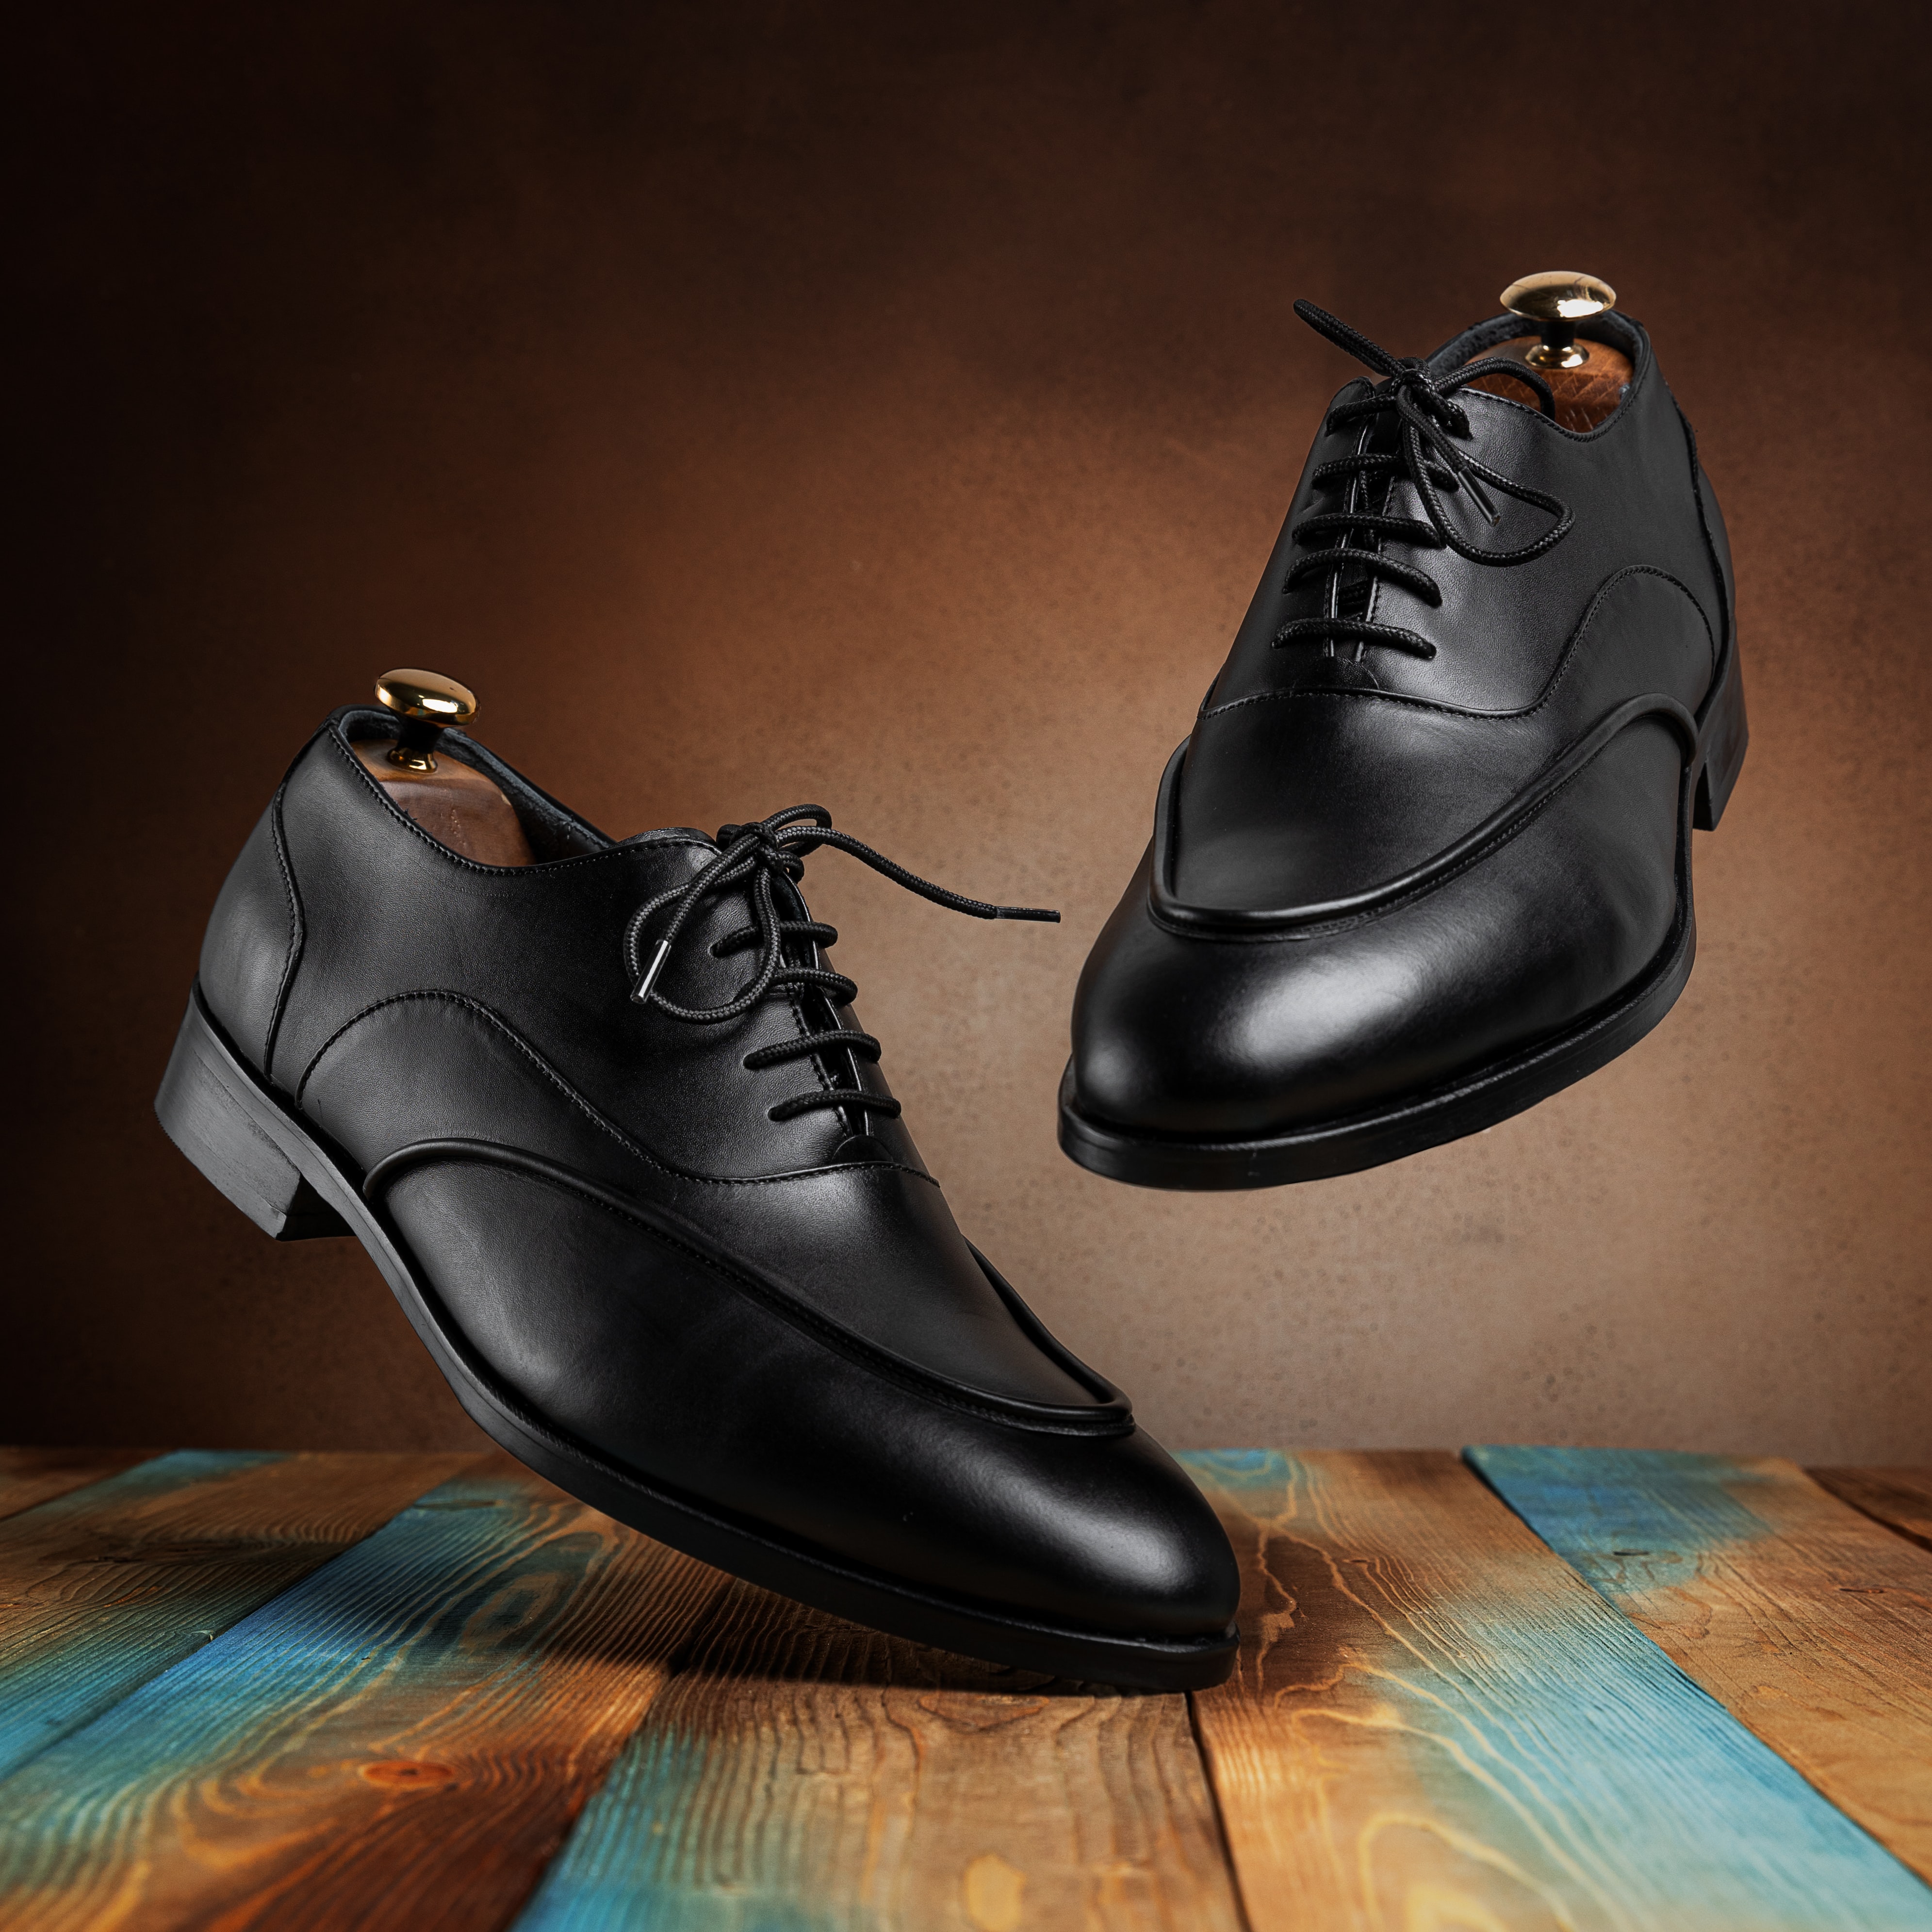 La imagen muestra dos zapatos negros.